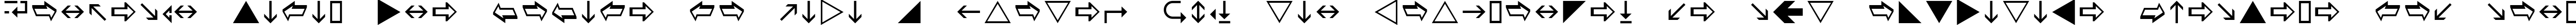 Пример написания шрифтом Wingdings 3 текста на испанском